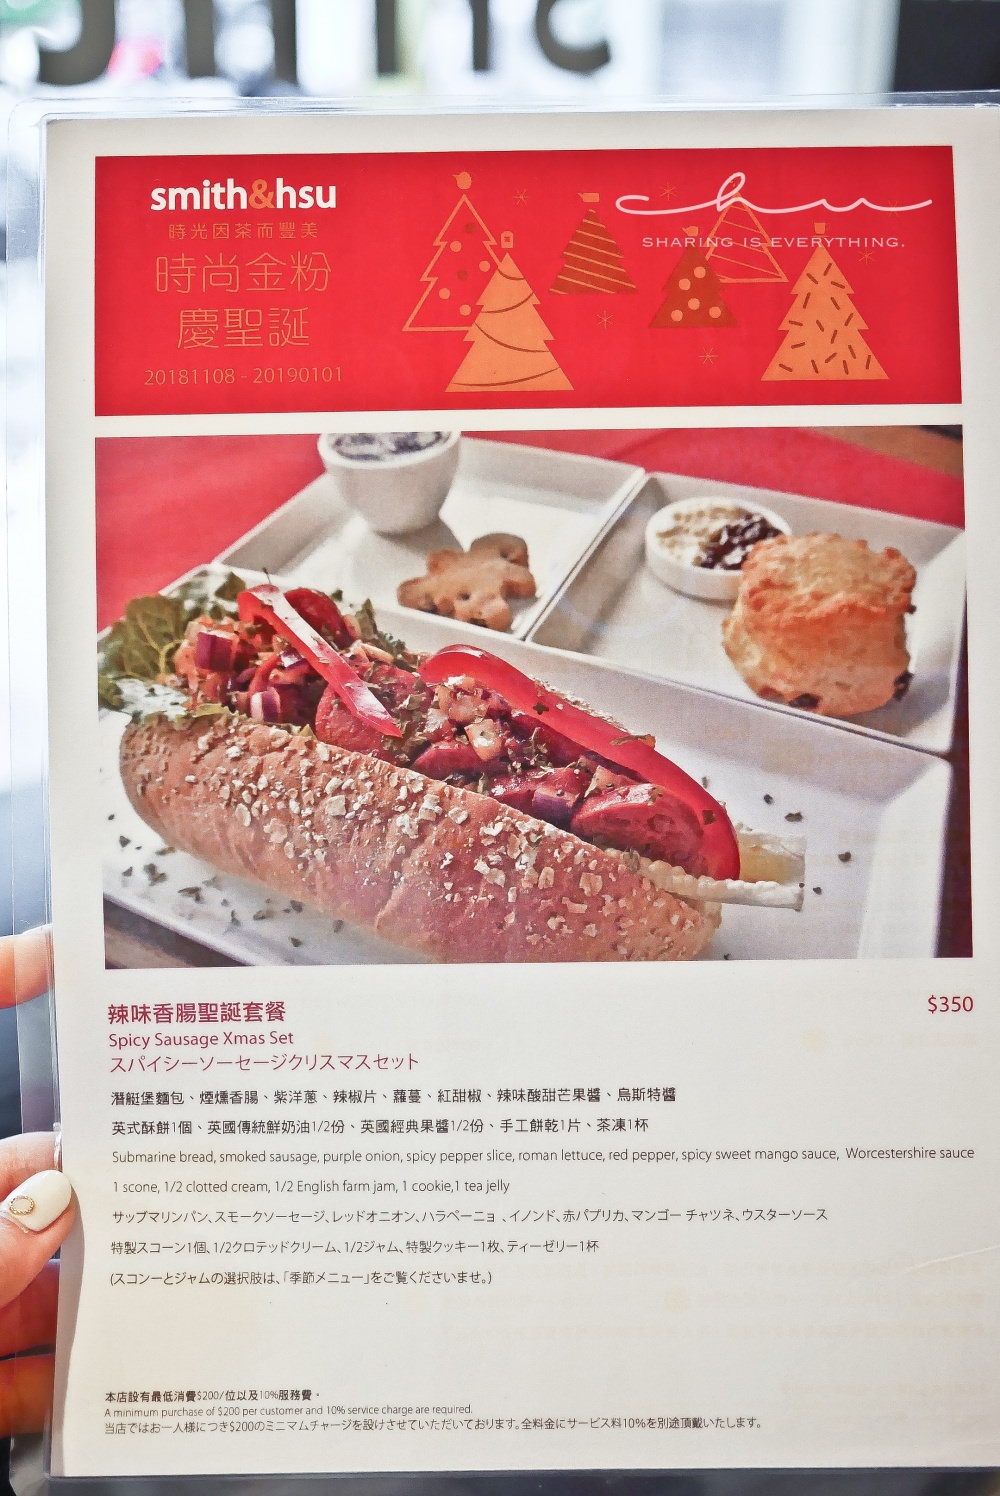 回訪超過五次smith&hsu 現代茶館！台北最好吃司康下午茶咖啡廳：漂浮茶酒、耶誕限定套餐🎄